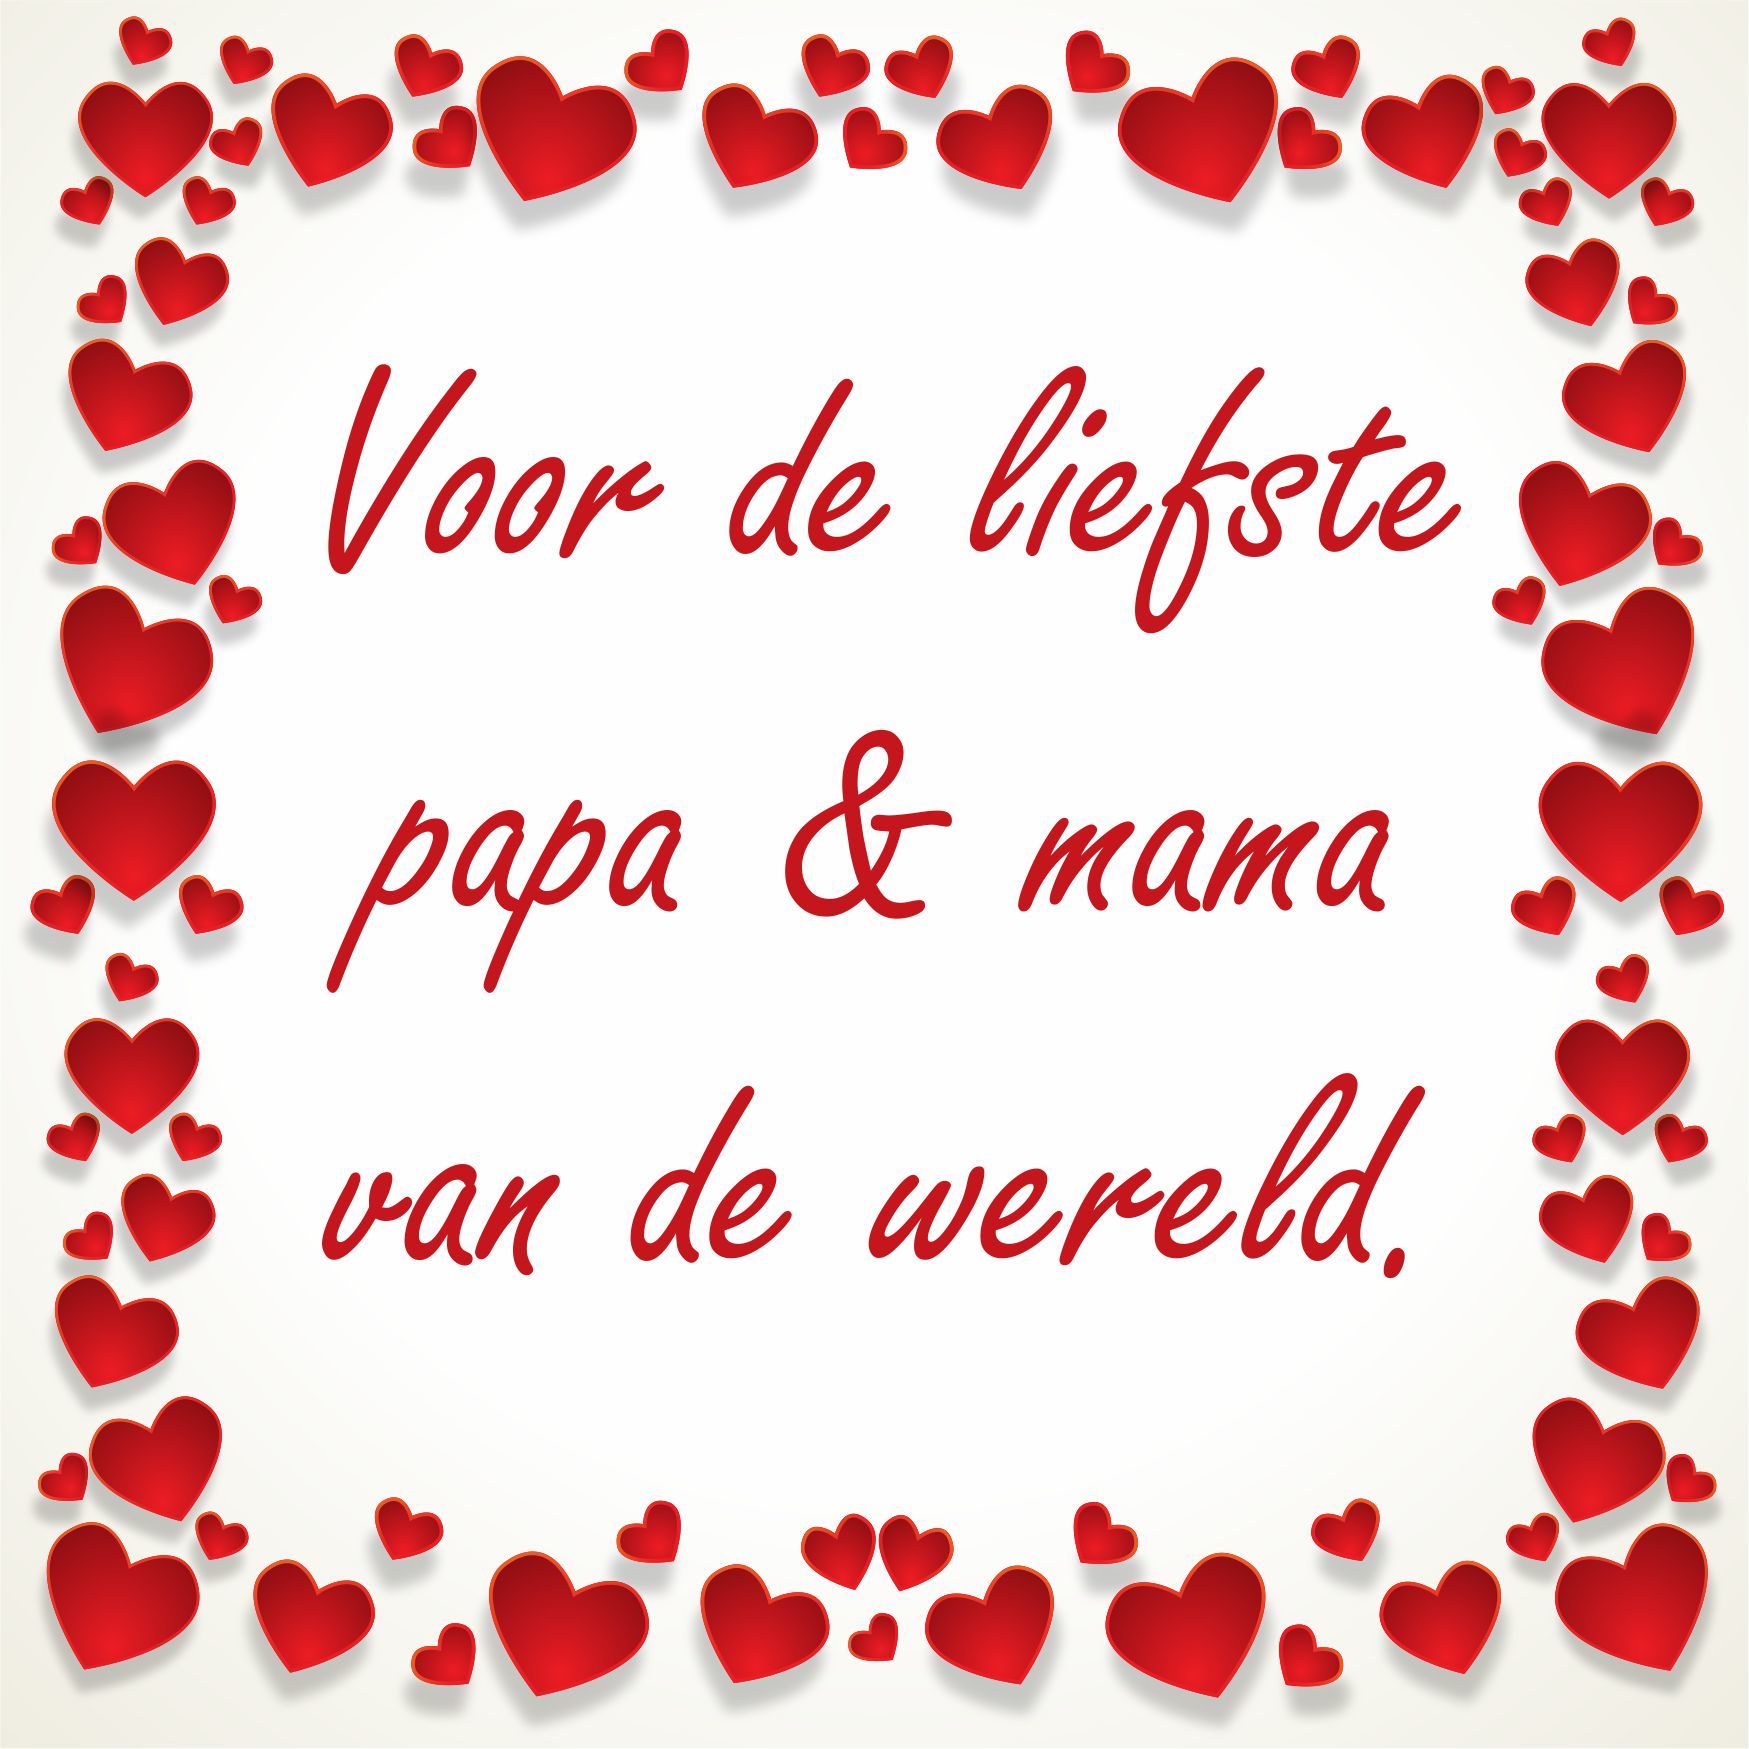 Valentijn tegeltje voor de liefste papa en mama van de wereld